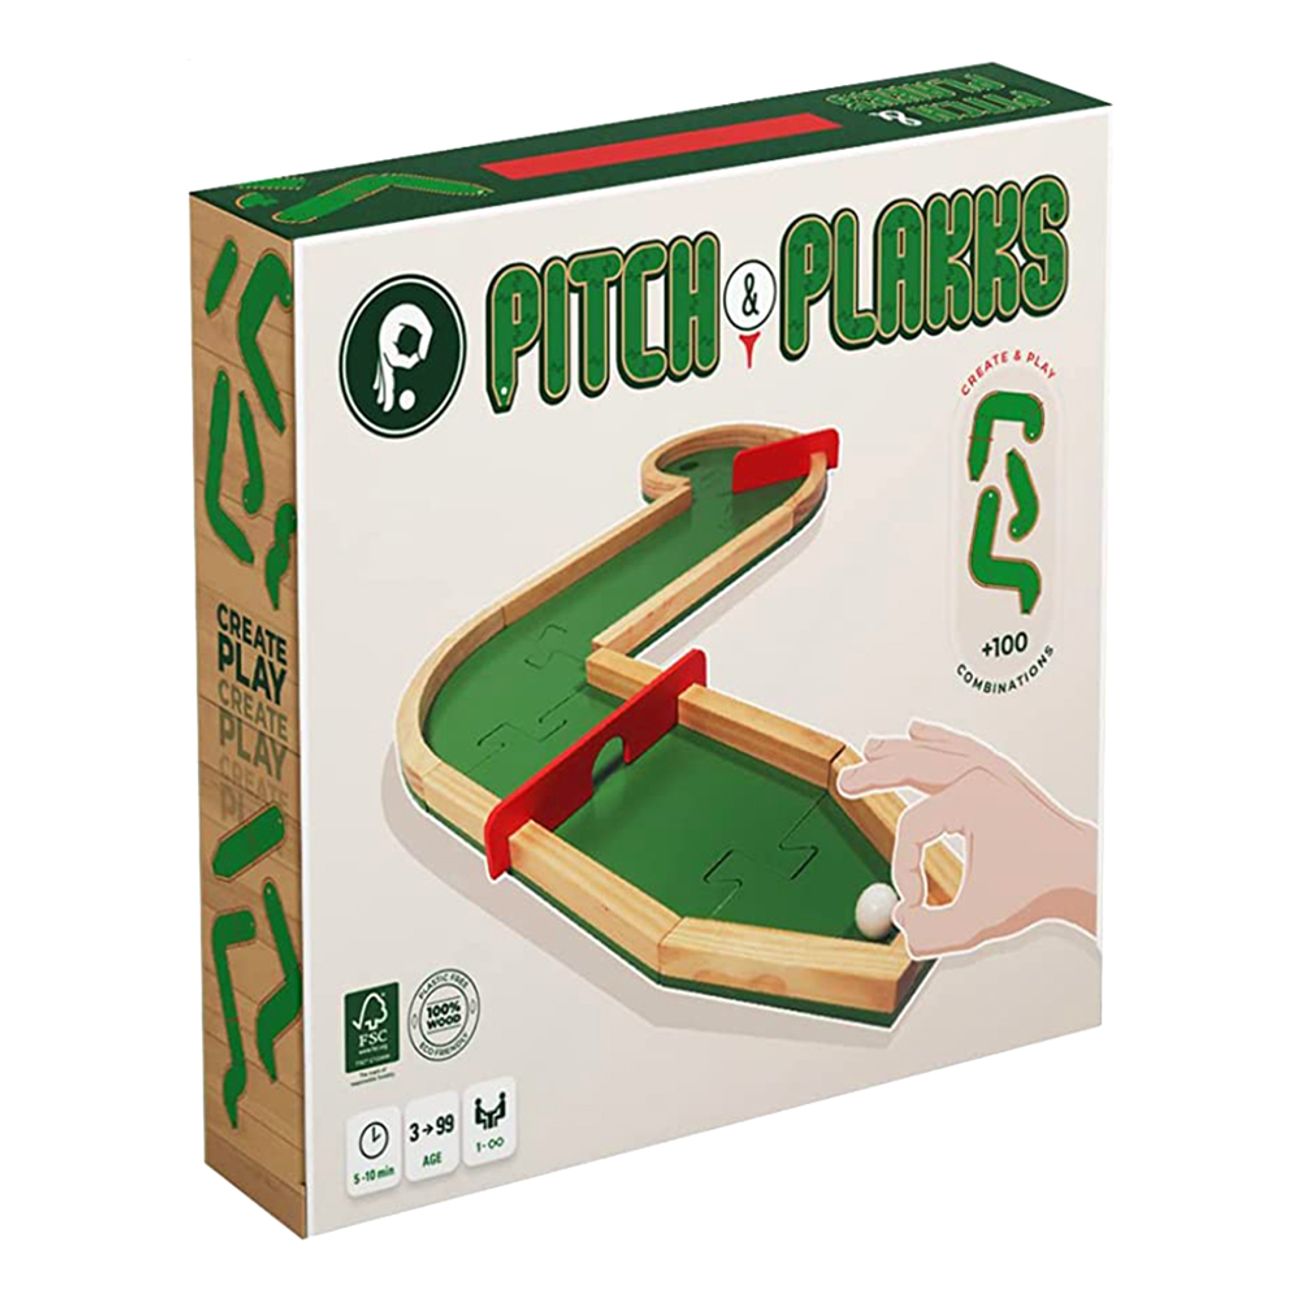 pitch-plakks-minigolf-spel-97707-1